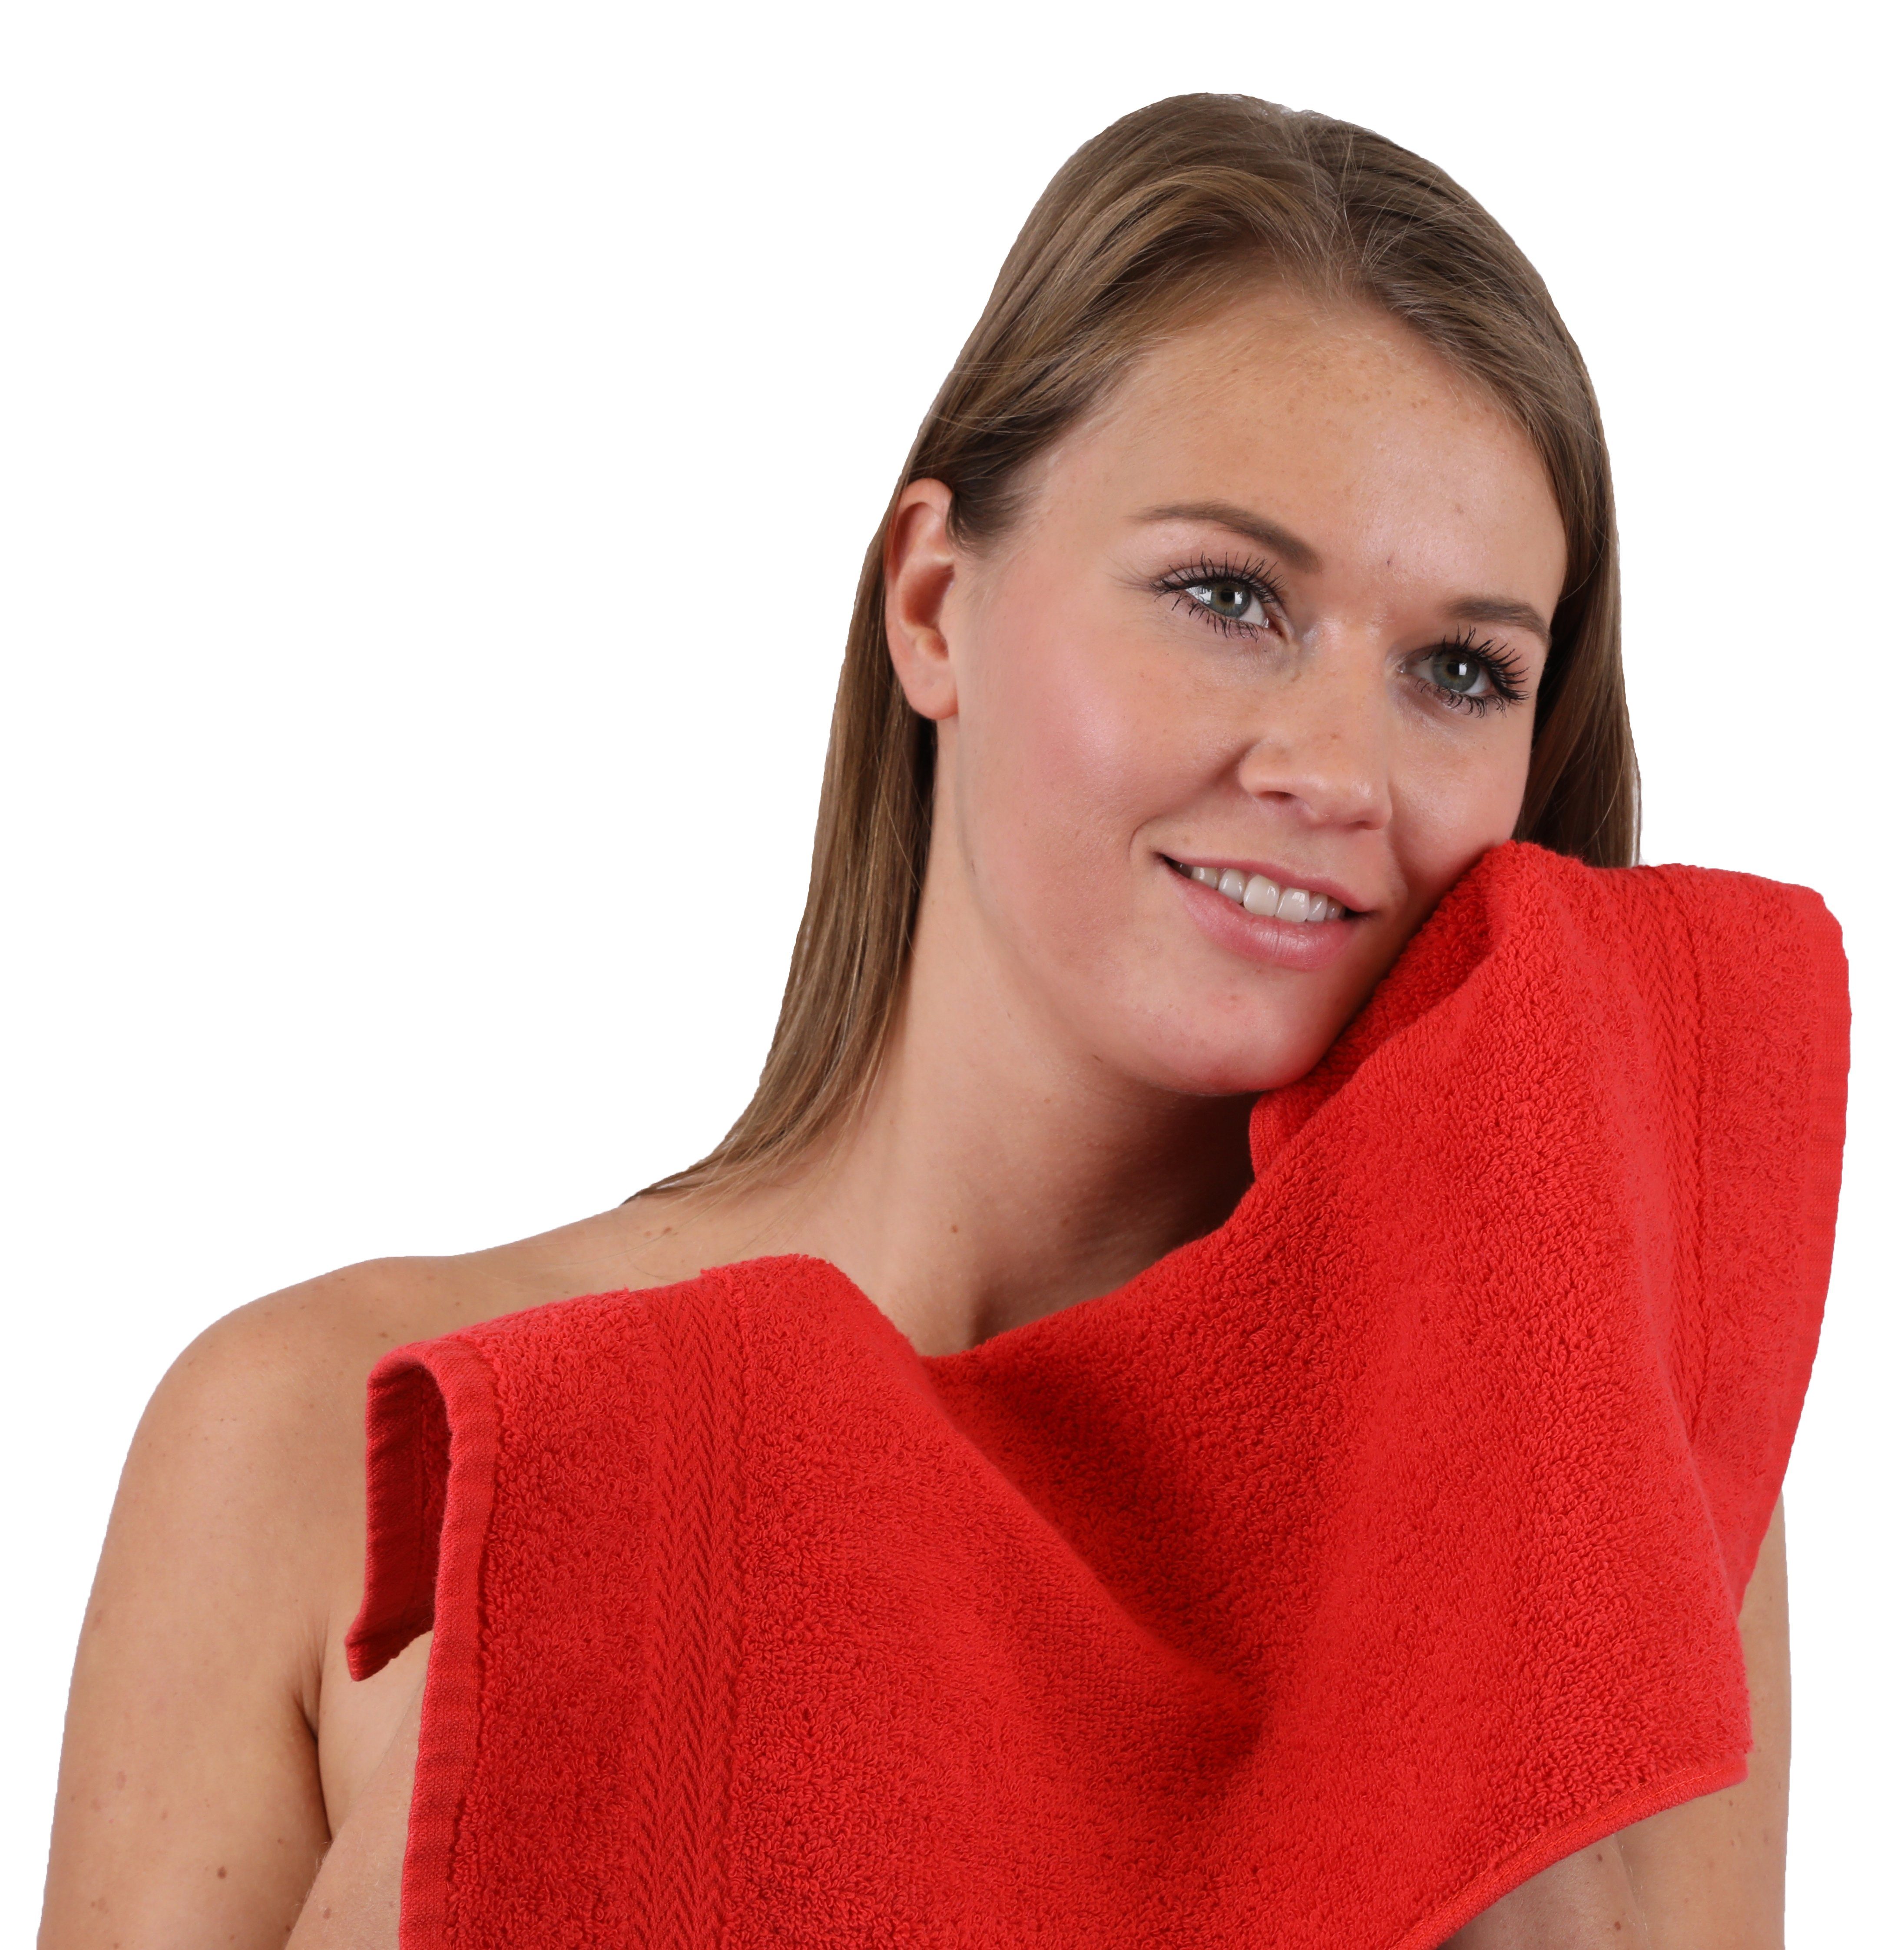 100% & Handtuch 10-TLG. Betz Farbe Gelb, Rot Handtuch-Set (10-tlg) Premium Baumwolle, Set